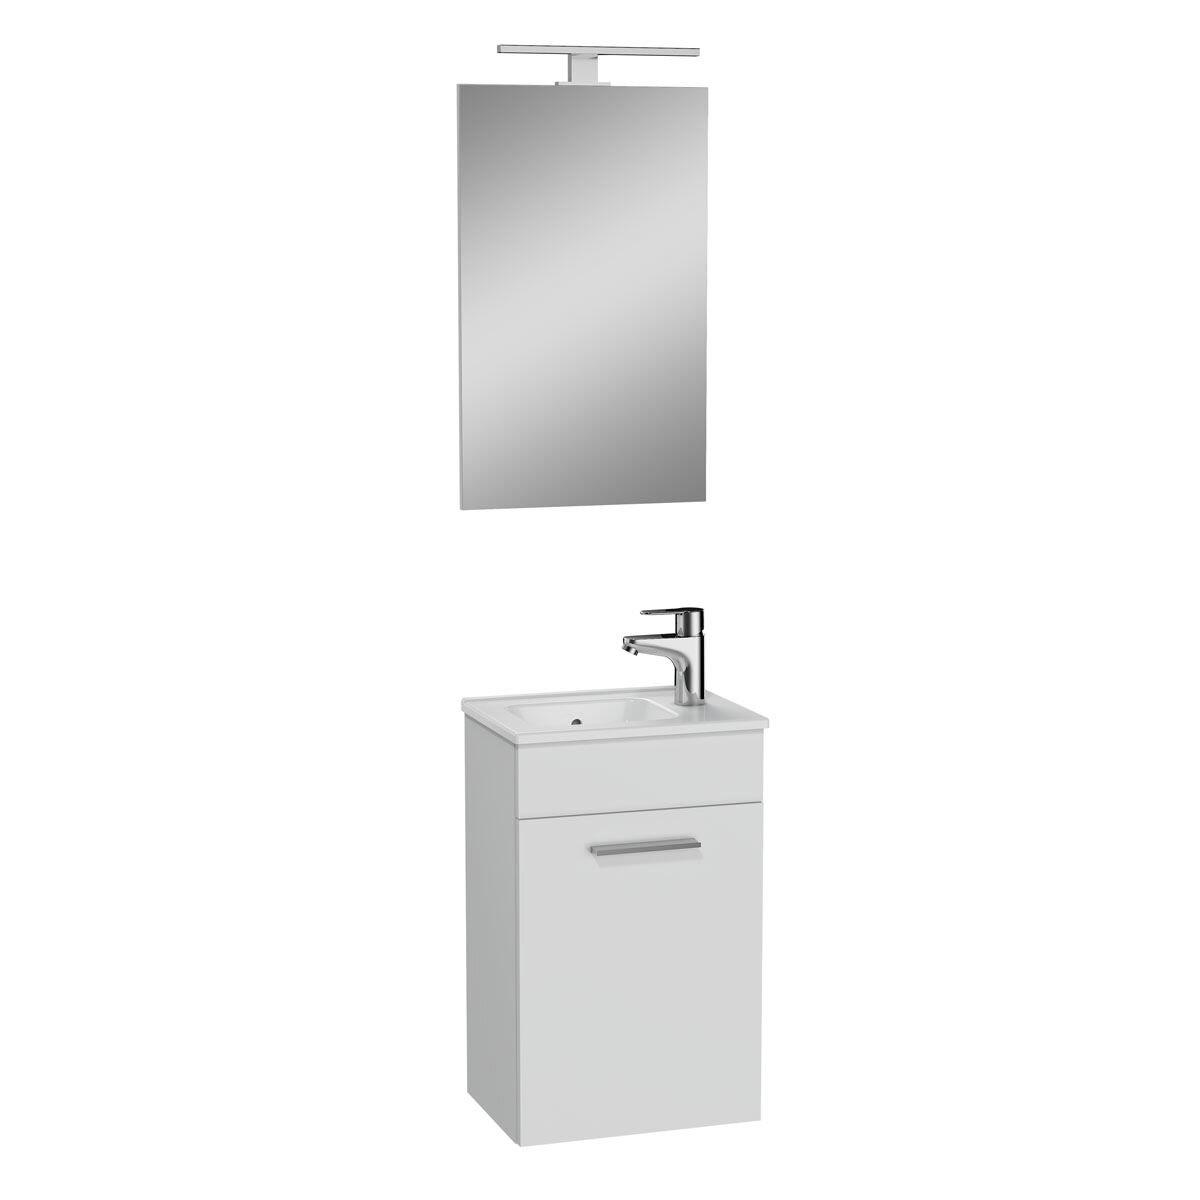 75022-Vitra Mia Banyo Dolabı Seti - 40cm Parlak Beyaz , Kapaklı - Lavabo Dolabı + Düz Ayna